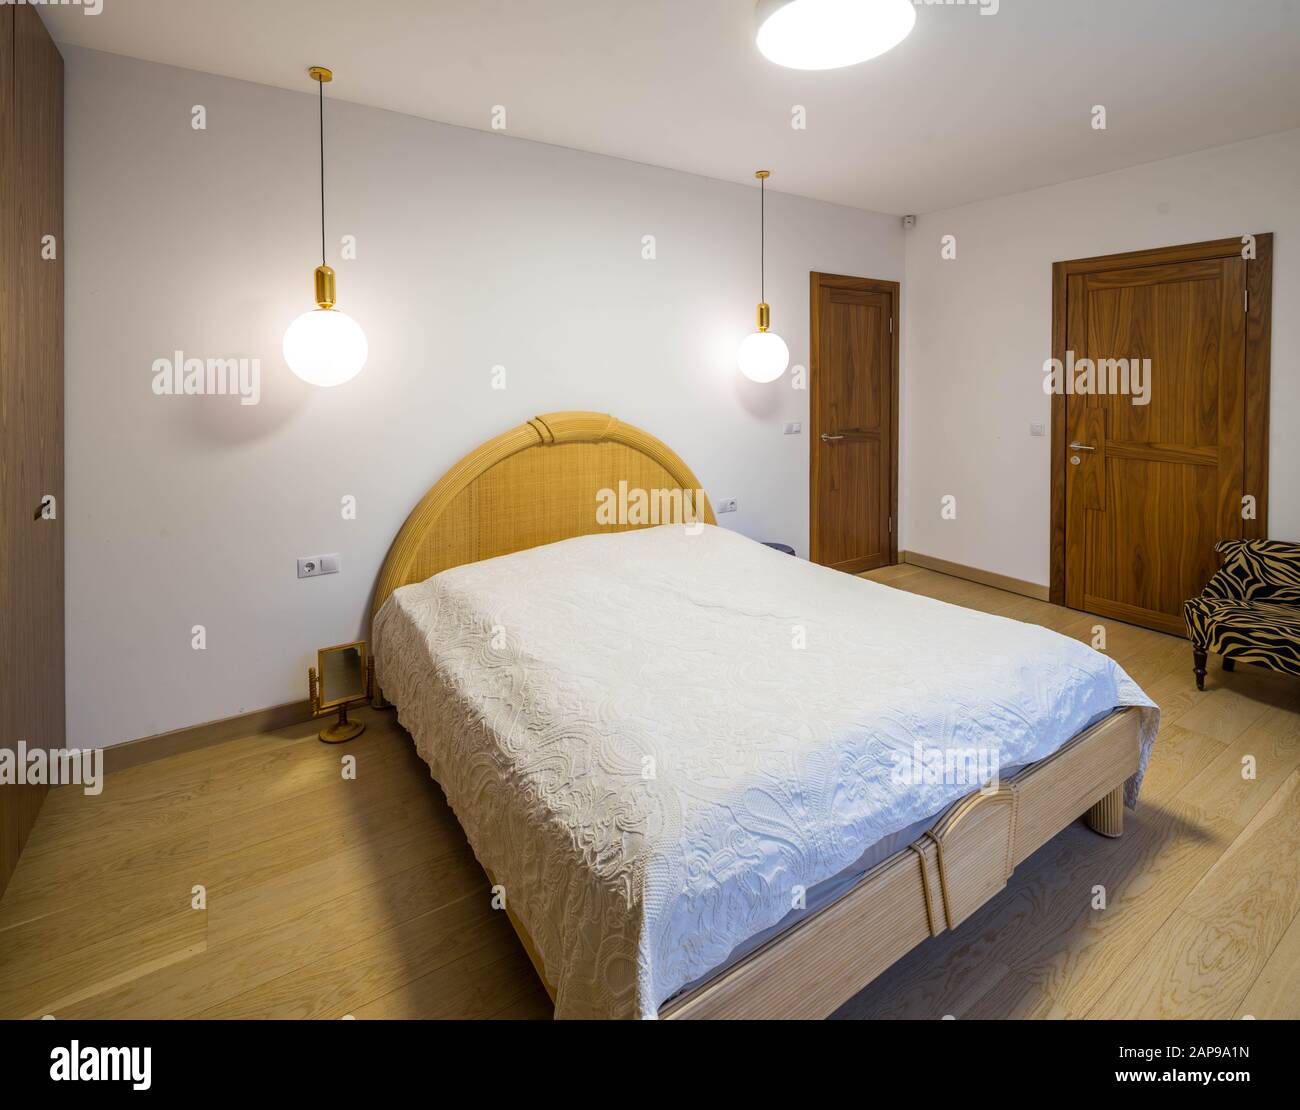 Interior moderno y luminoso del dormitorio. Cama de matrimonio con respaldo  redondo. Lámparas redondas. Puertas de madera Fotografía de stock - Alamy